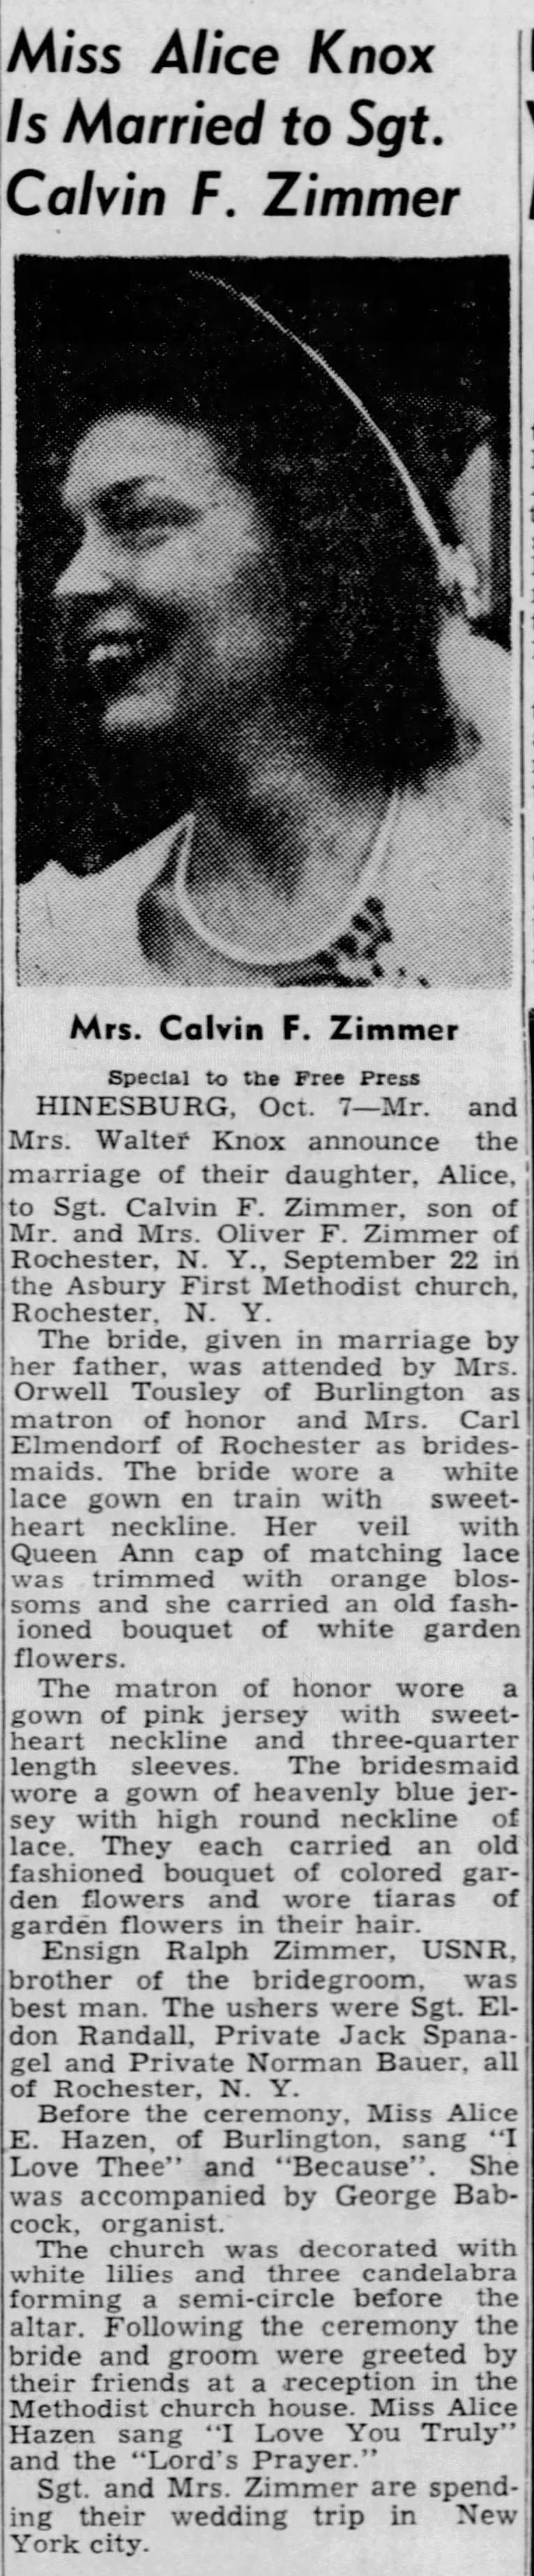 Calvin F. Zimmer wedding announcement